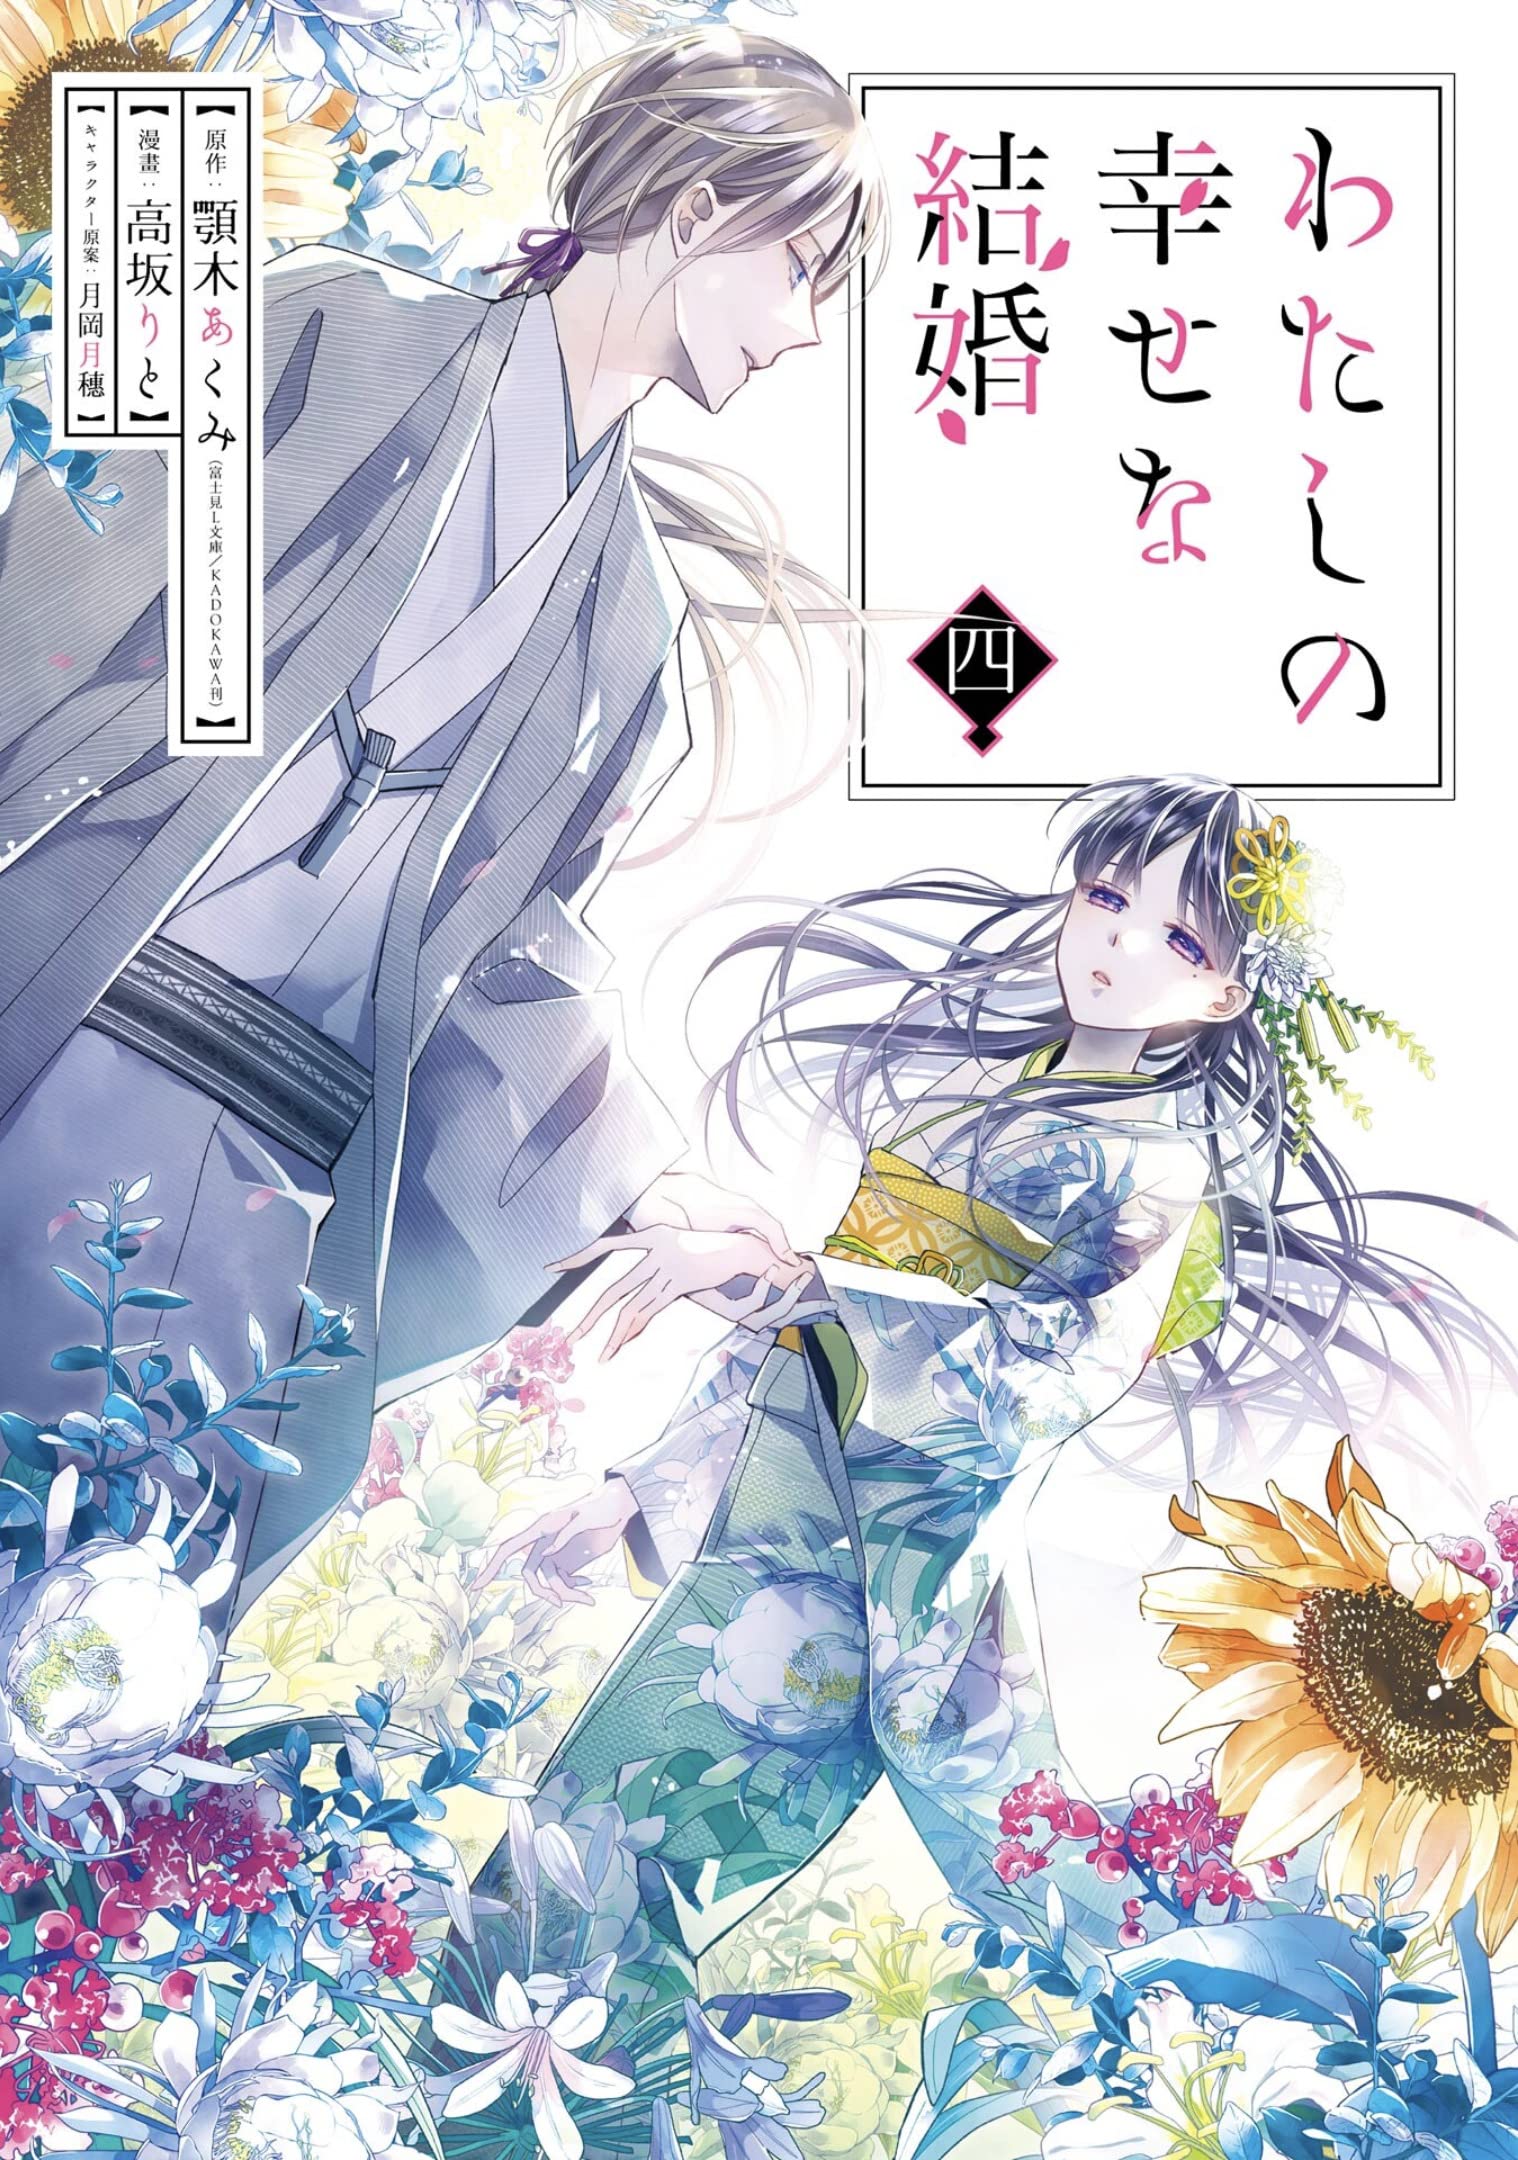 Akumi Agitogi, Rito Kohsaka, Tsukiho Tsukioka: My Happy Marriage 04 (EBook)